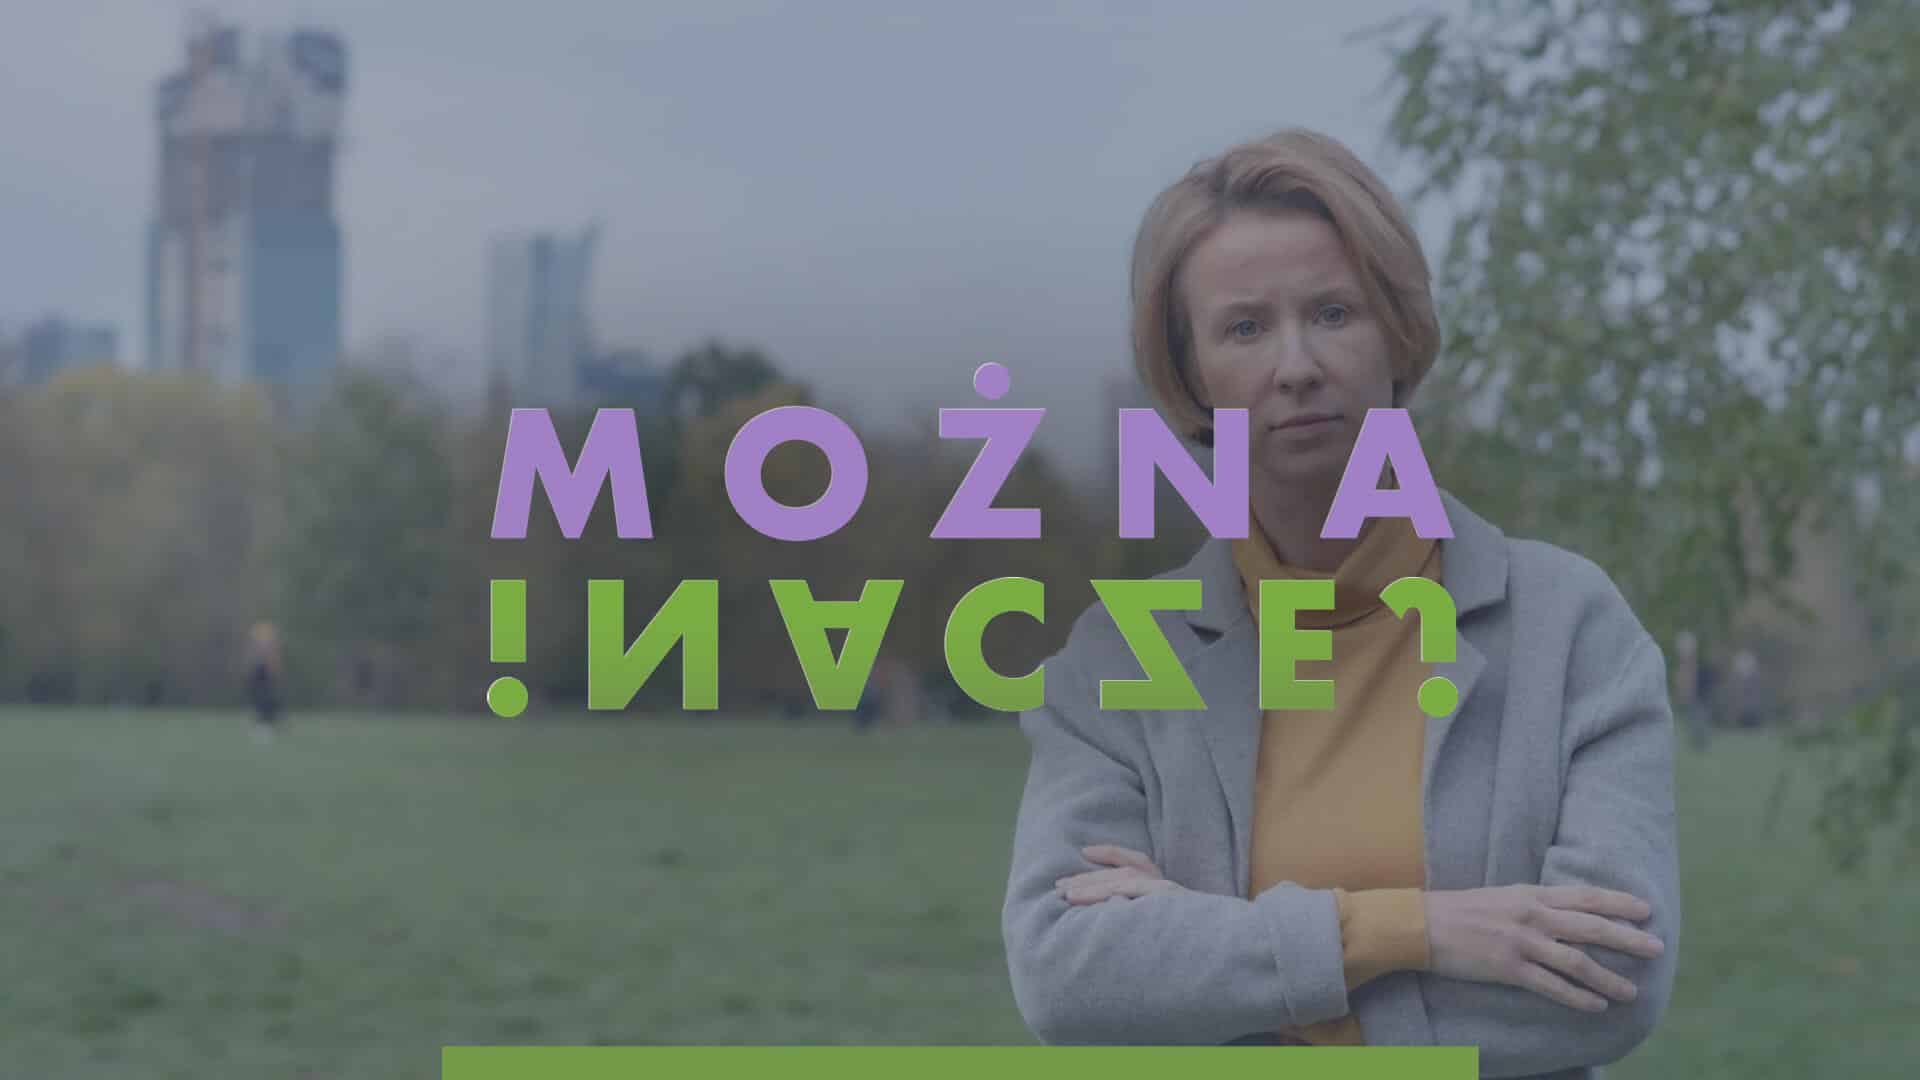 Ankudowicz|Katarzyna Ankudowicz|Katarzyna Andukowicz|Andukowicz Katarzyna